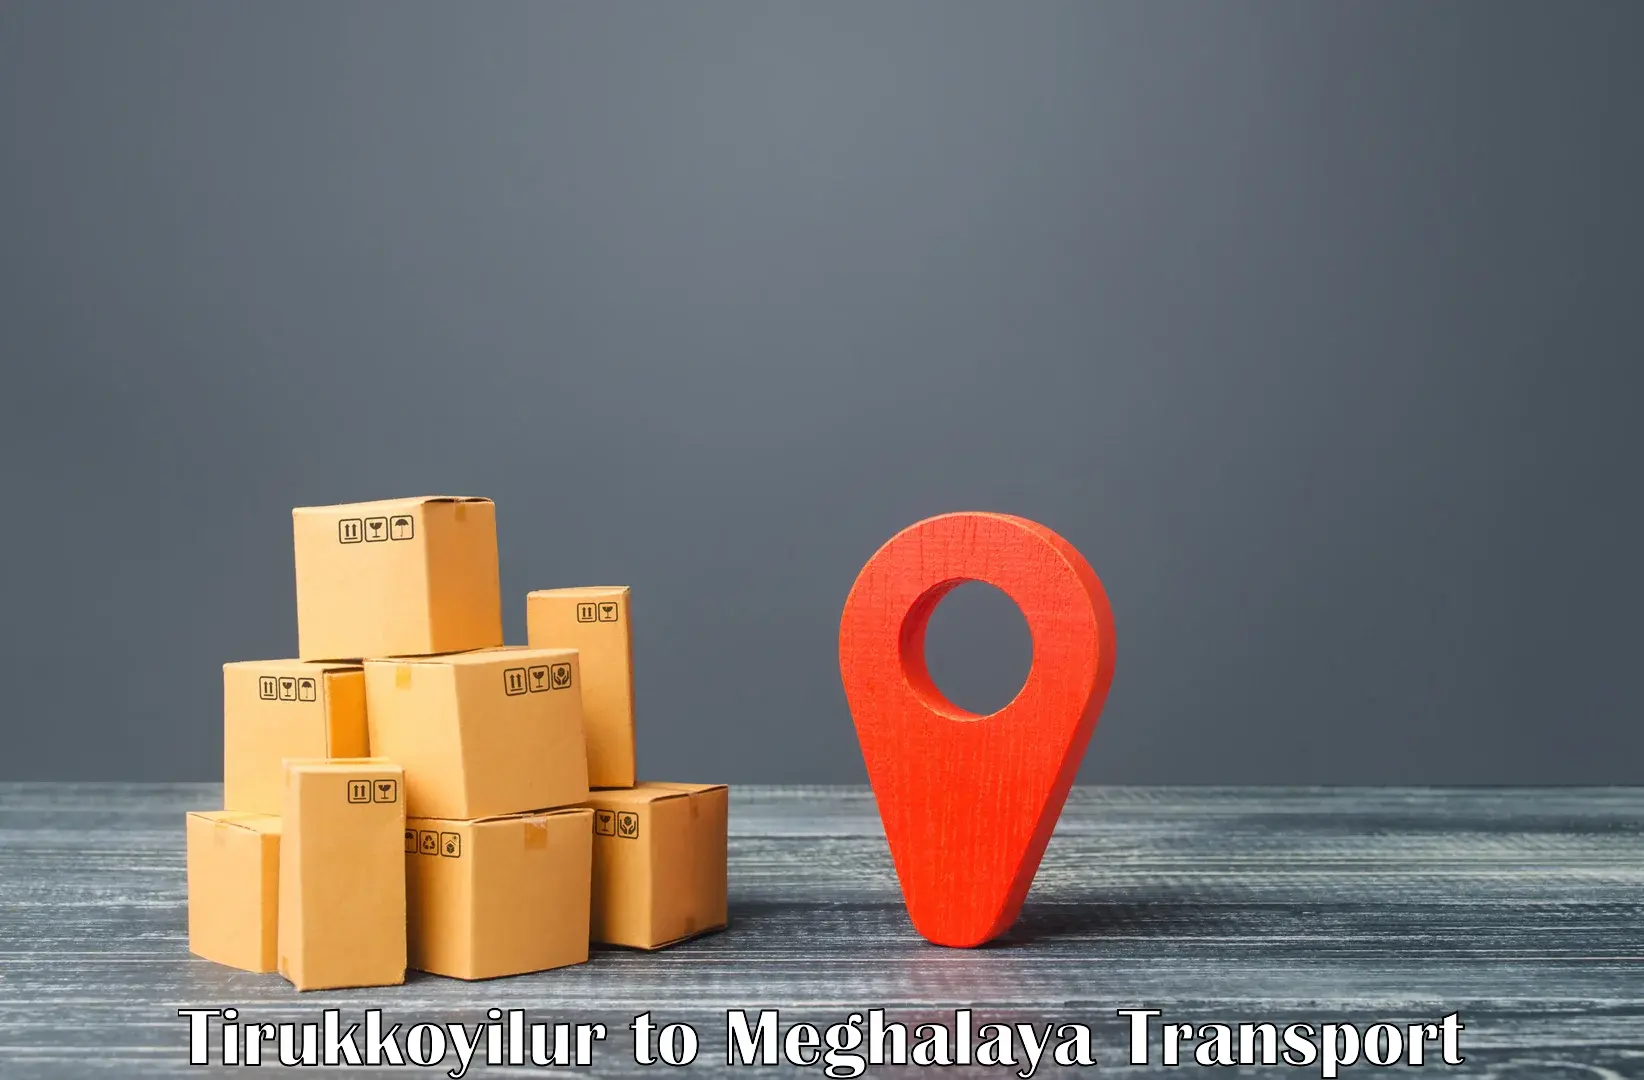 Furniture transport service Tirukkoyilur to Garobadha